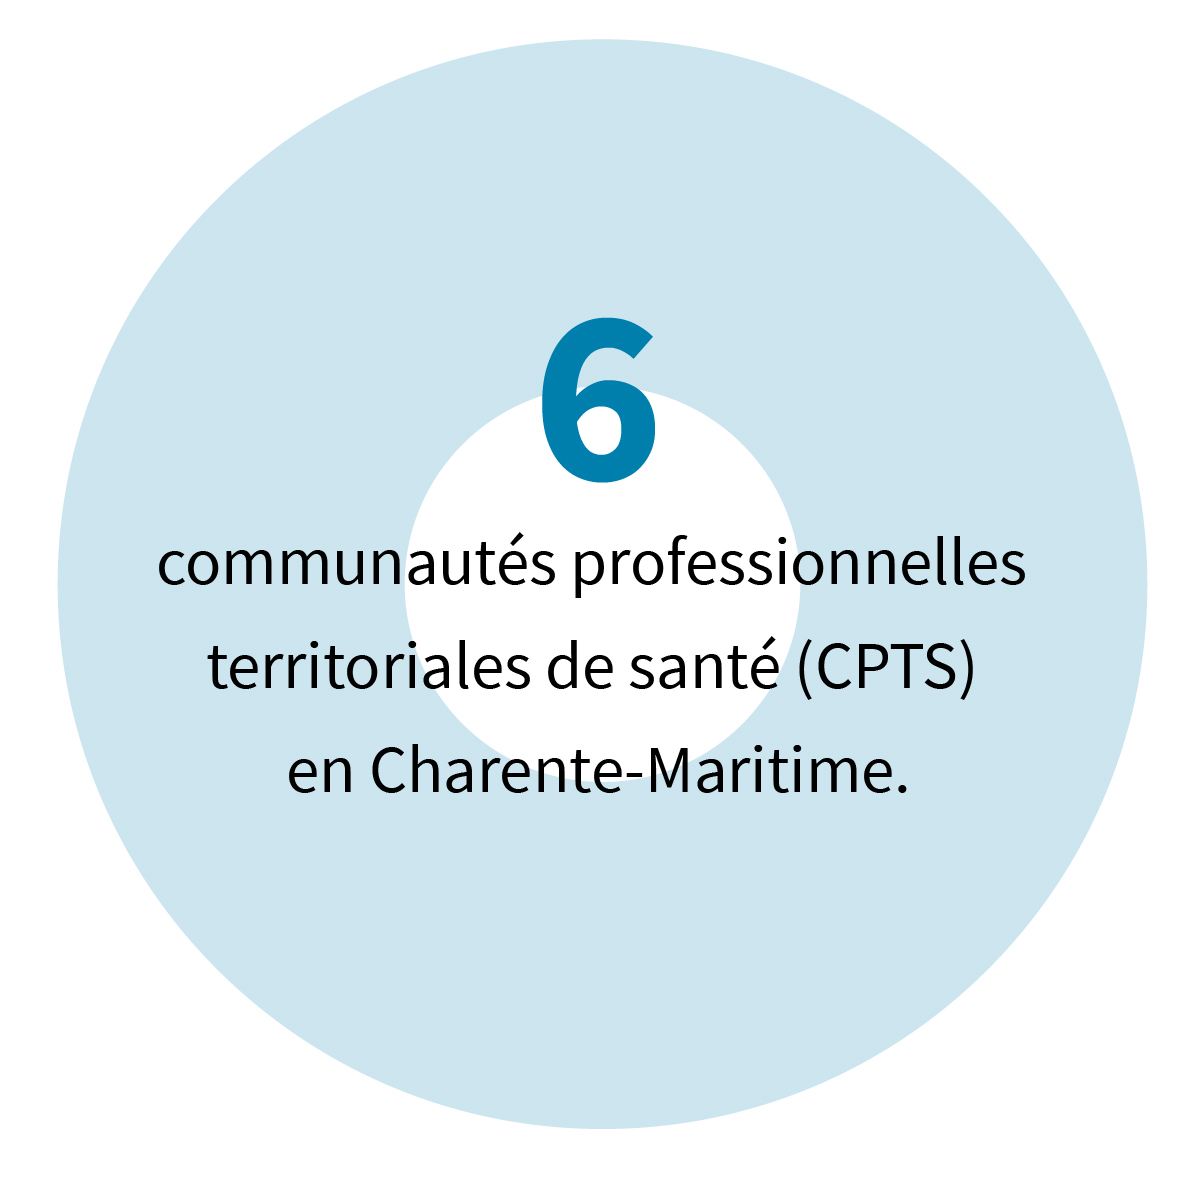 6 communautés professionnelles territoriales de santé (CPTS) en Charente-Maritime.